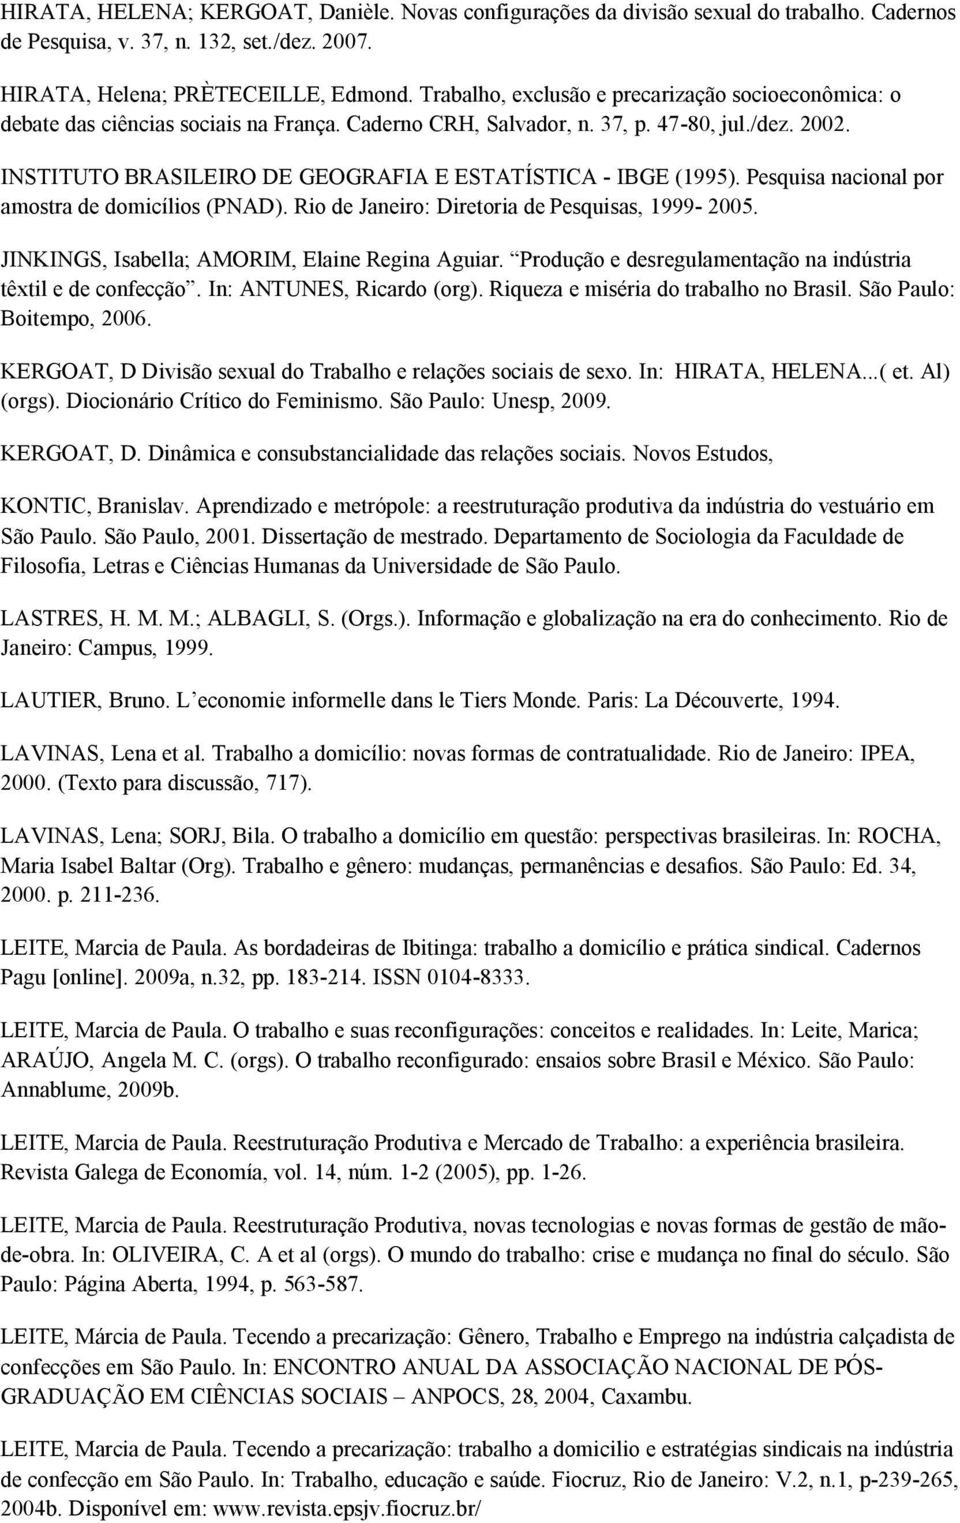 INSTITUTO BRASILEIRO DE GEOGRAFIA E ESTATÍSTICA - IBGE (1995). Pesquisa nacional por amostra de domicílios (PNAD). Rio de Janeiro: Diretoria de Pesquisas, 1999-2005.